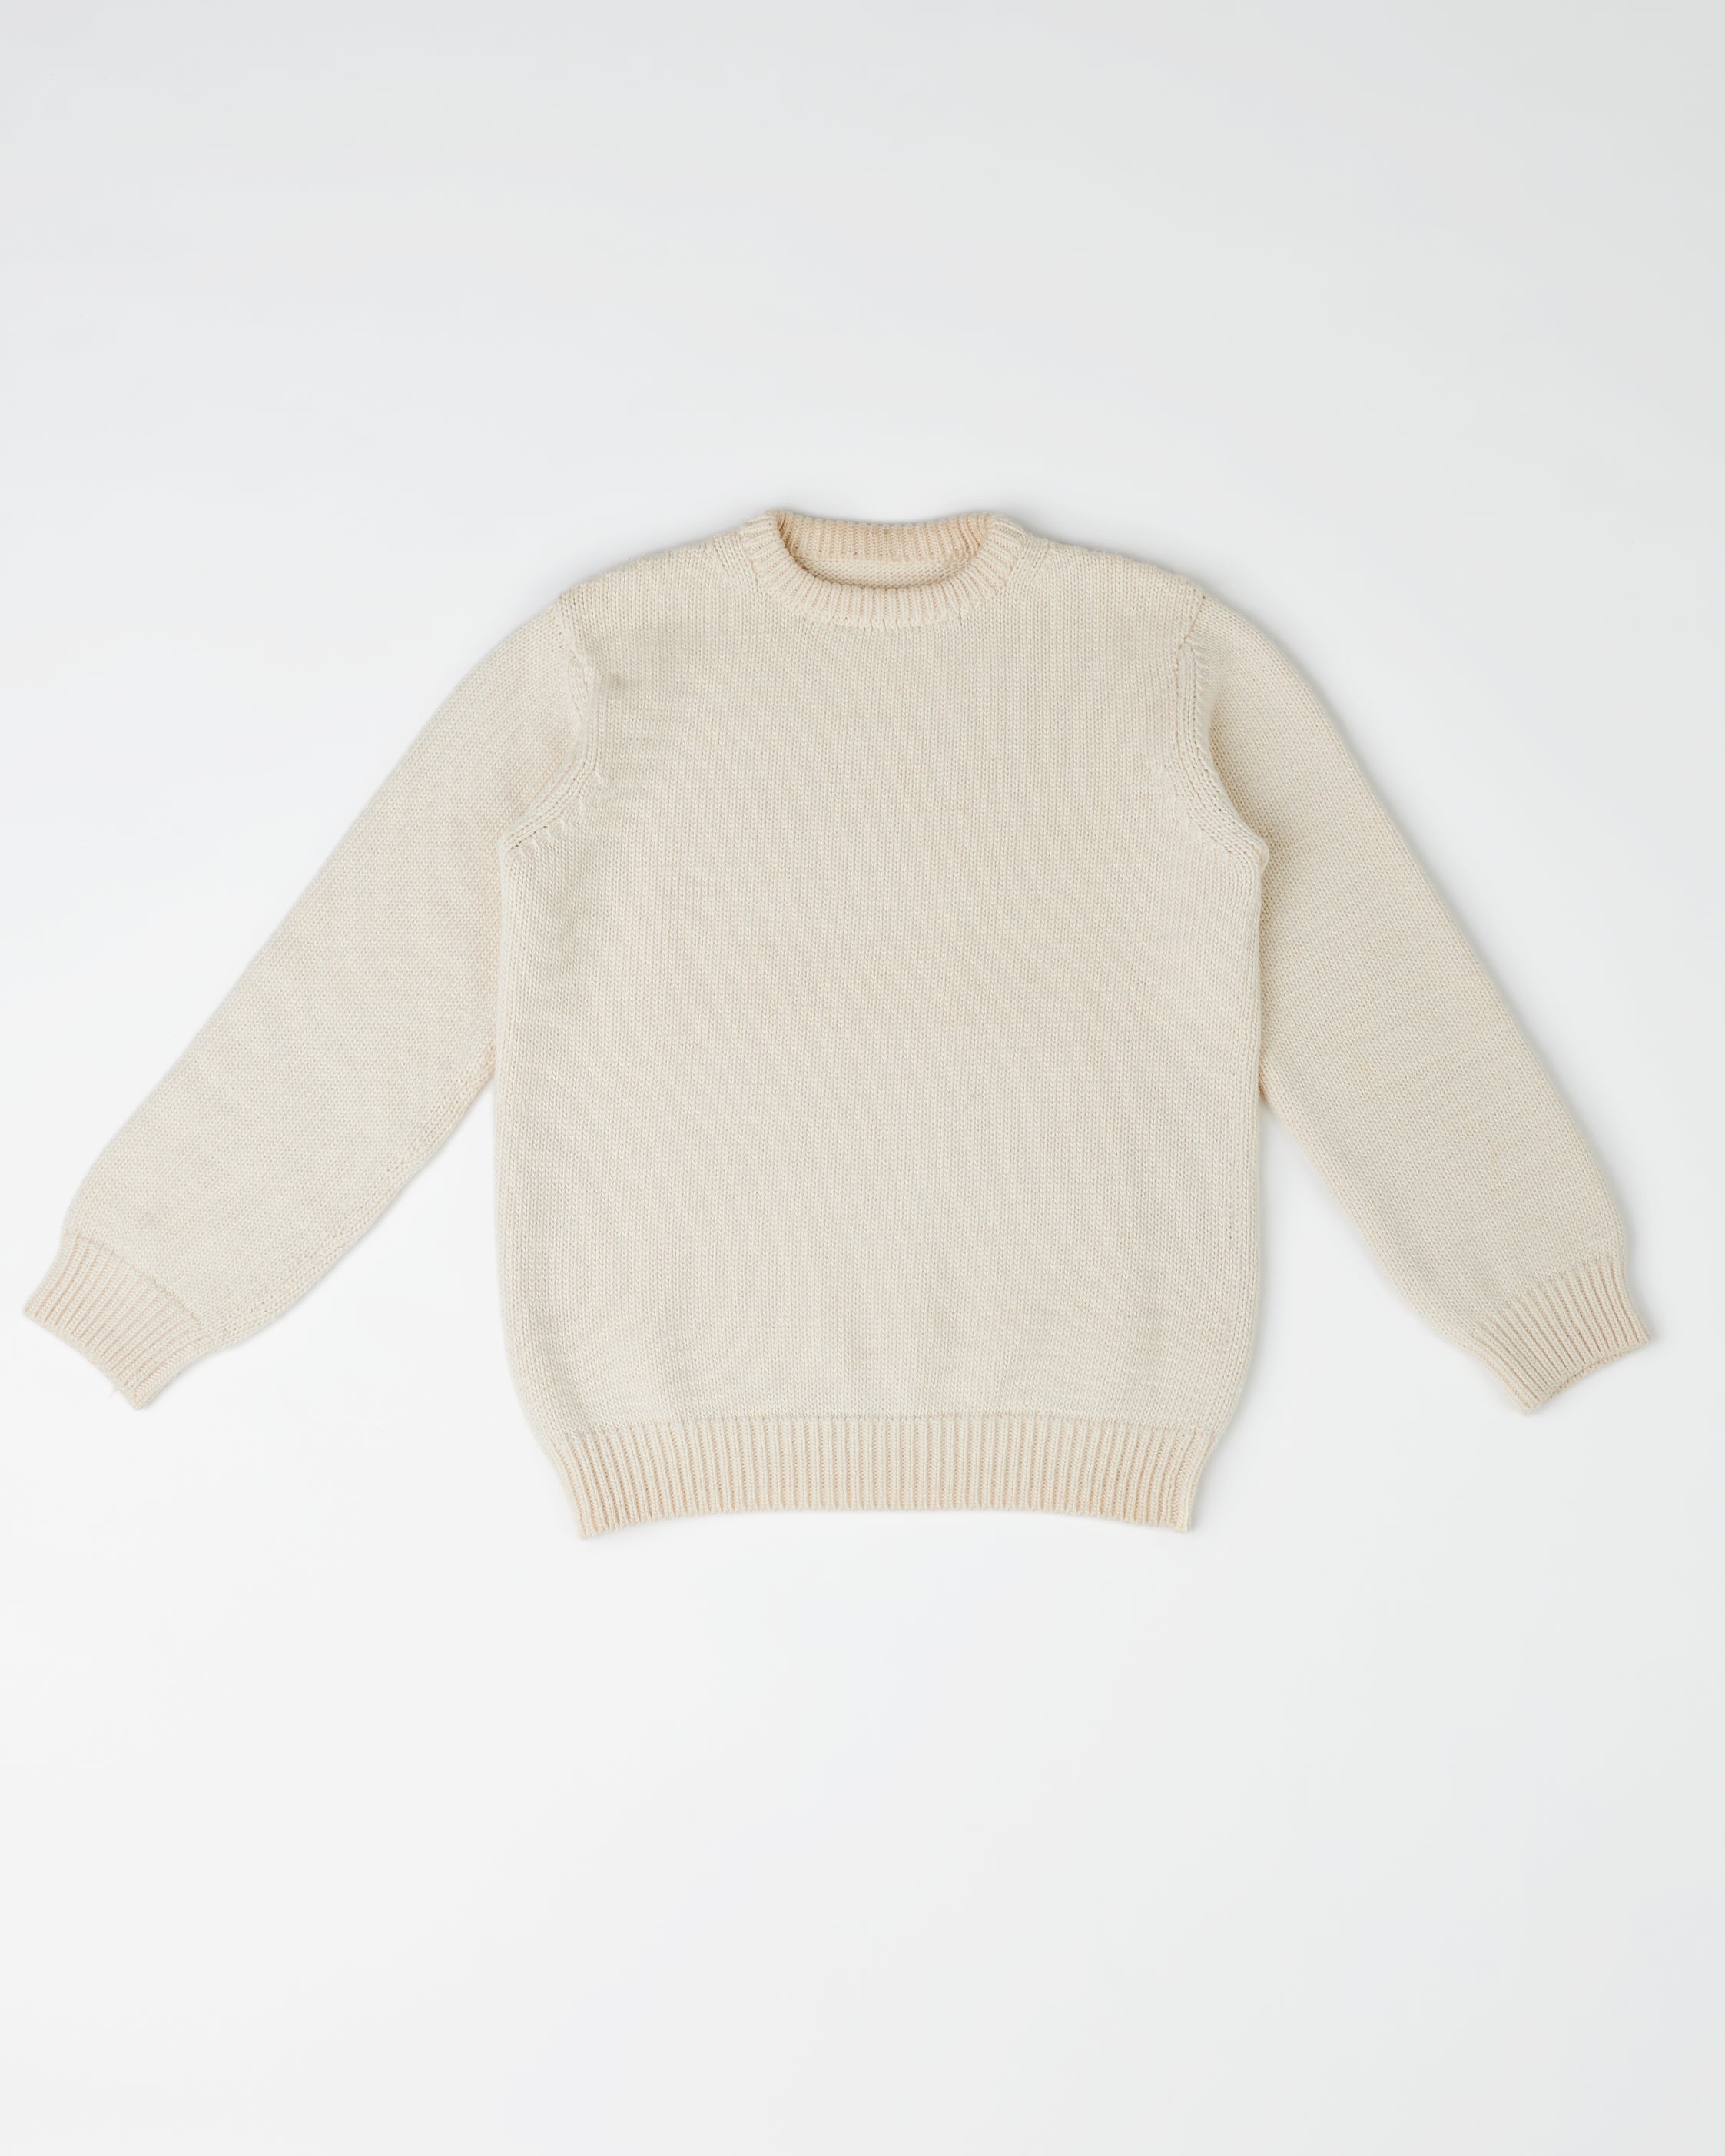 The 1kg Wool & Linen Sweater in Ecru 